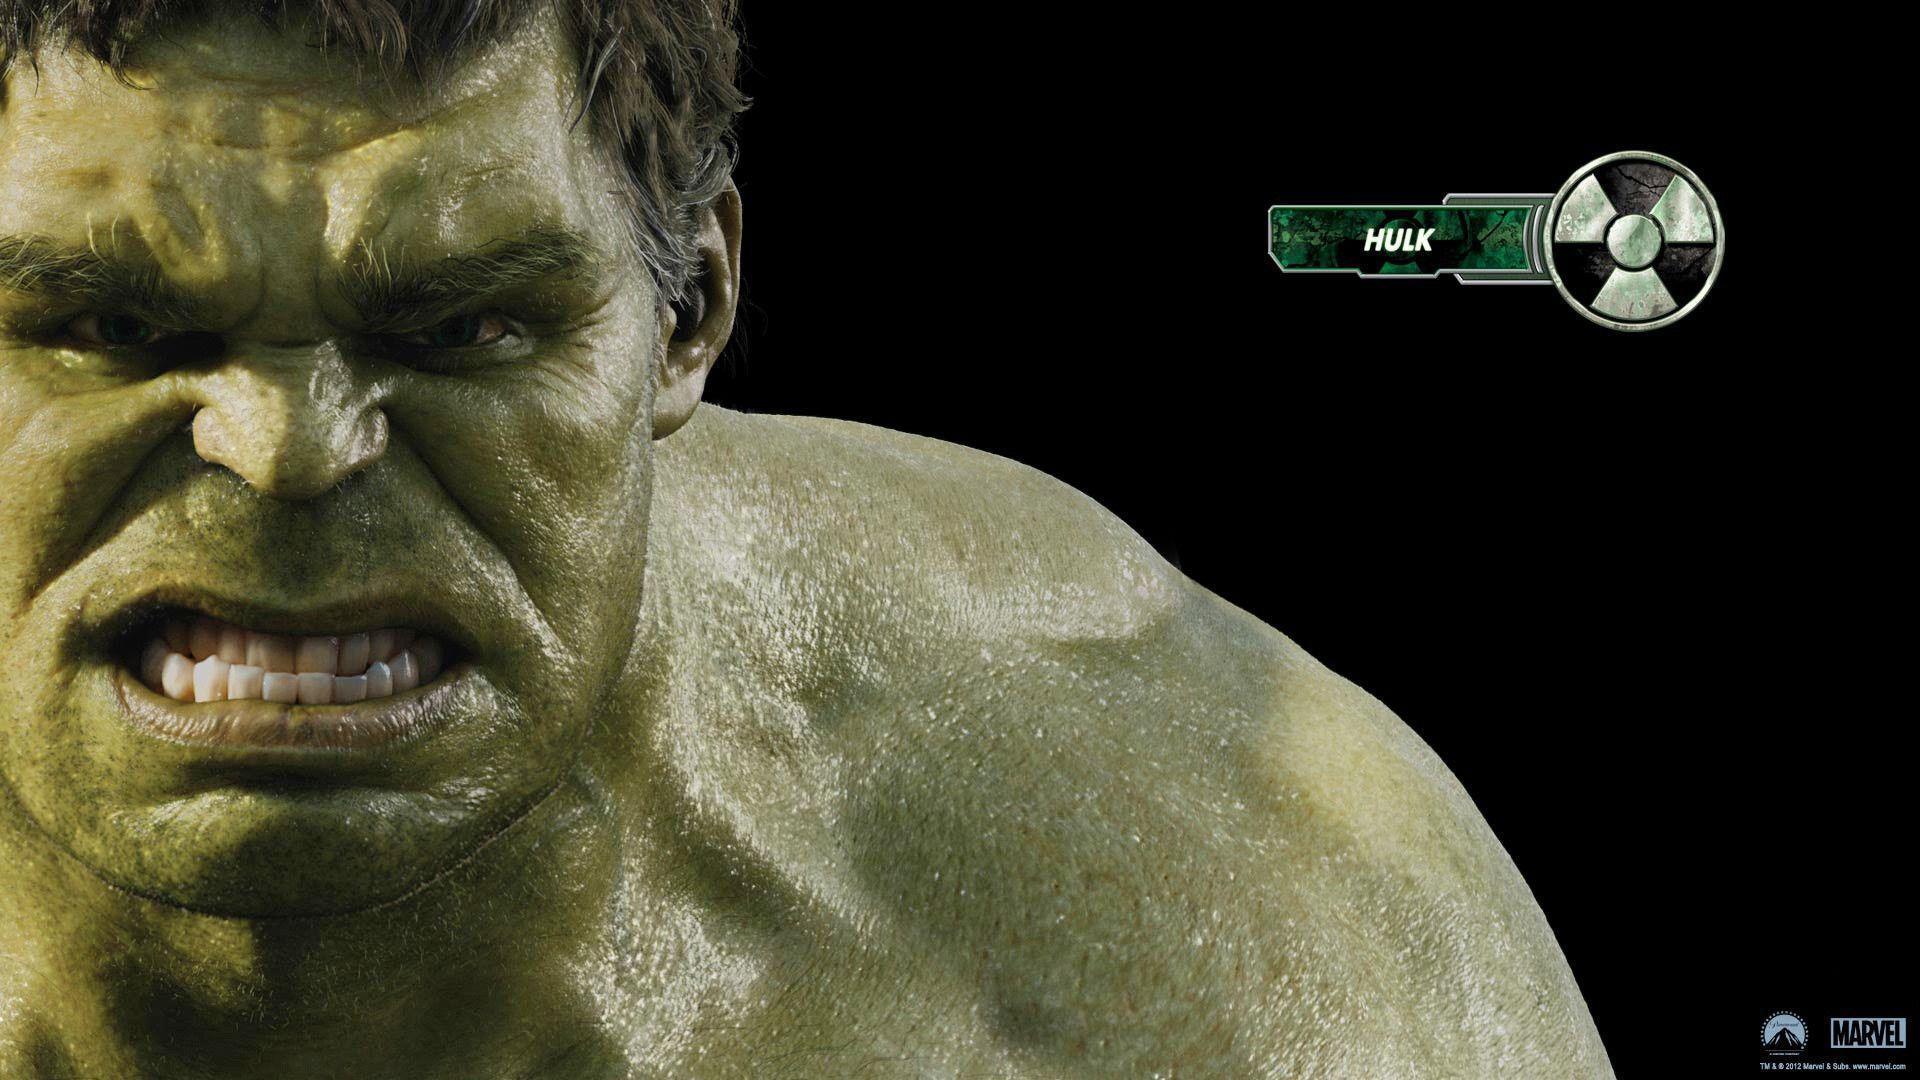 Hulk in Avengers Movie Wallpaper